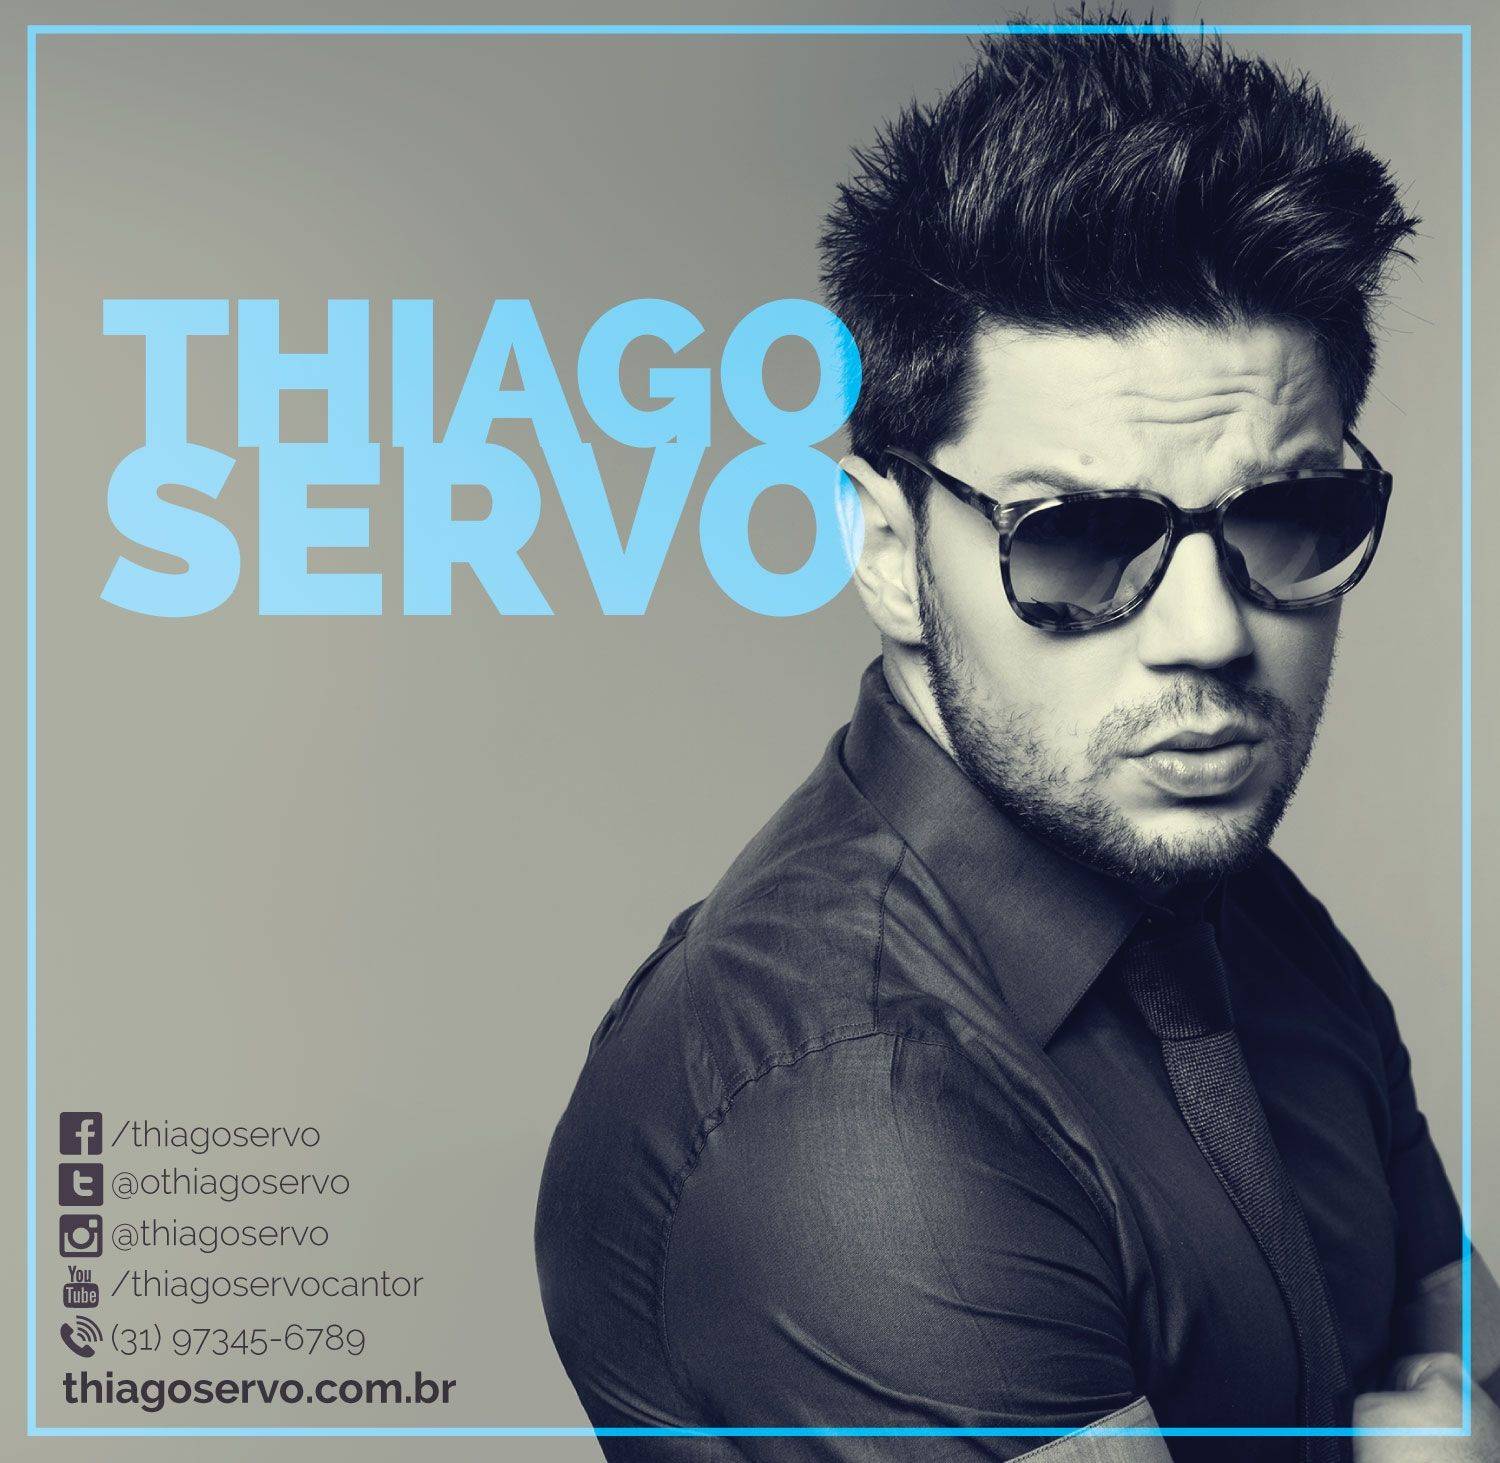 Thiago Servo